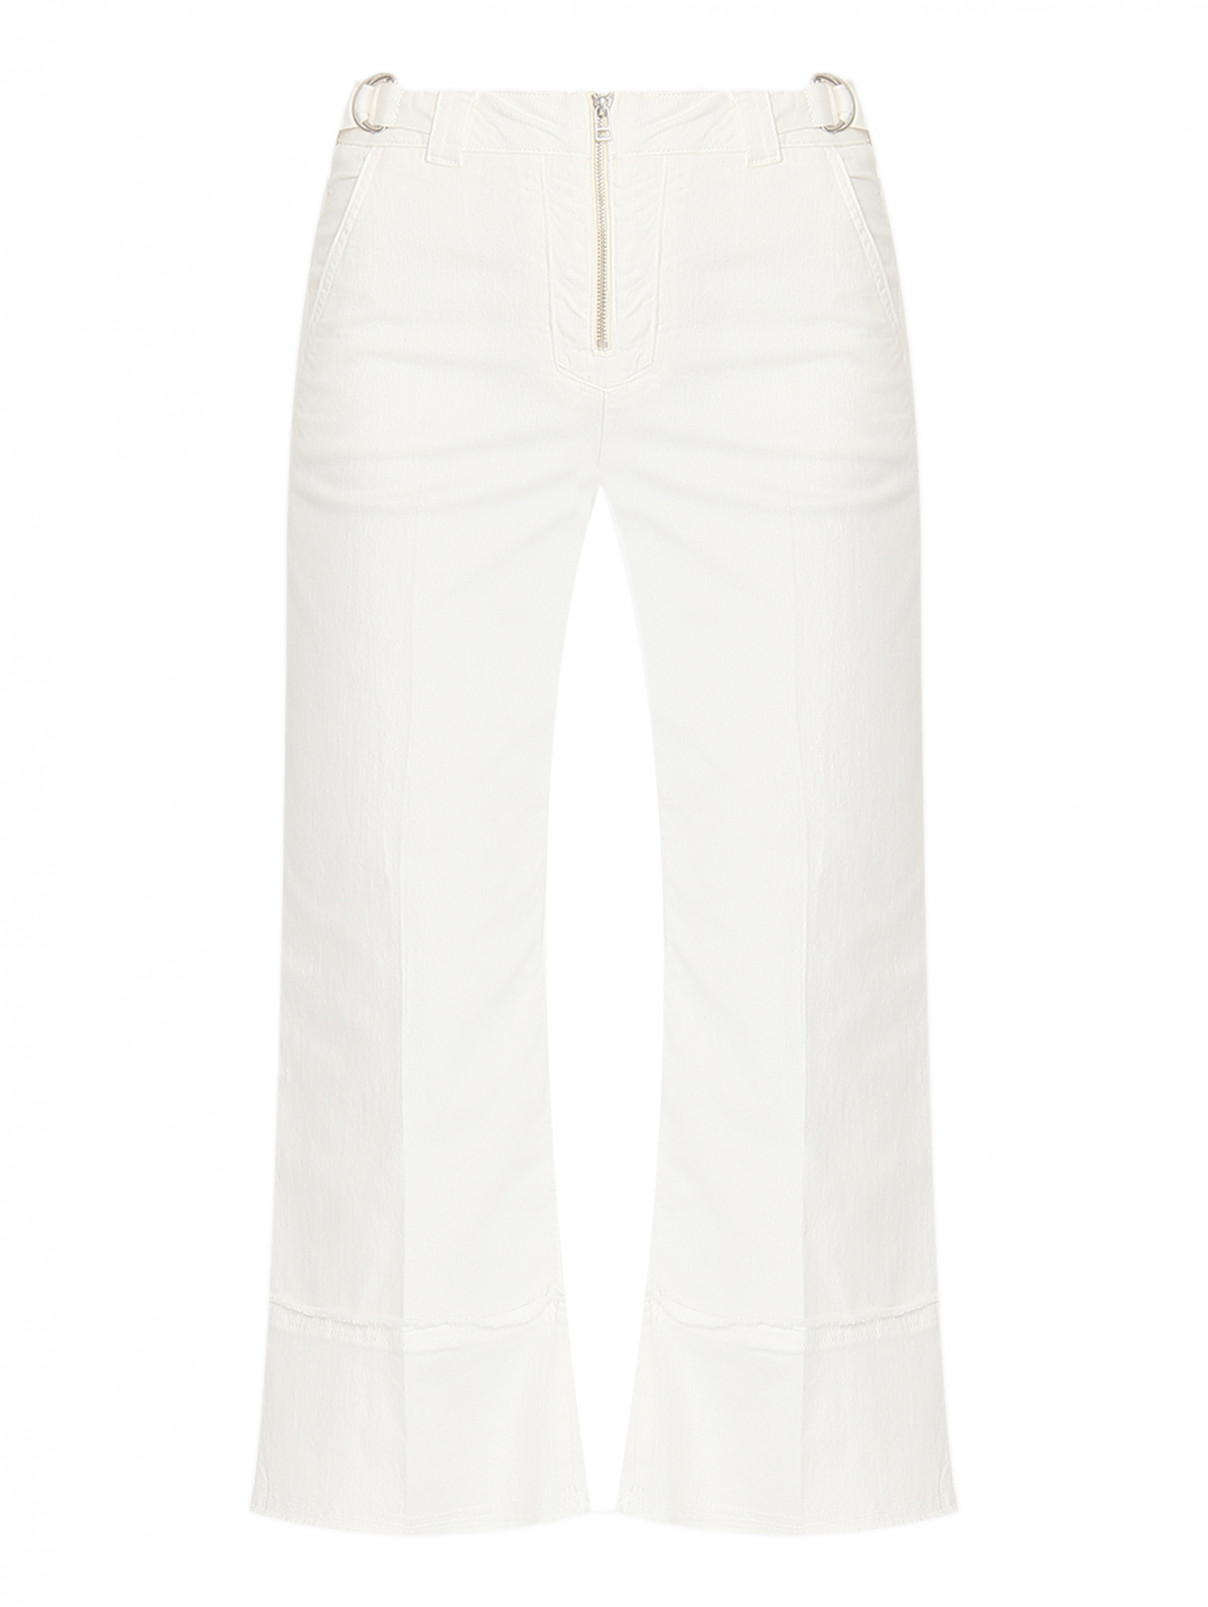 Укороченные джинсы из хлопка Max&Co  –  Общий вид  – Цвет:  Белый